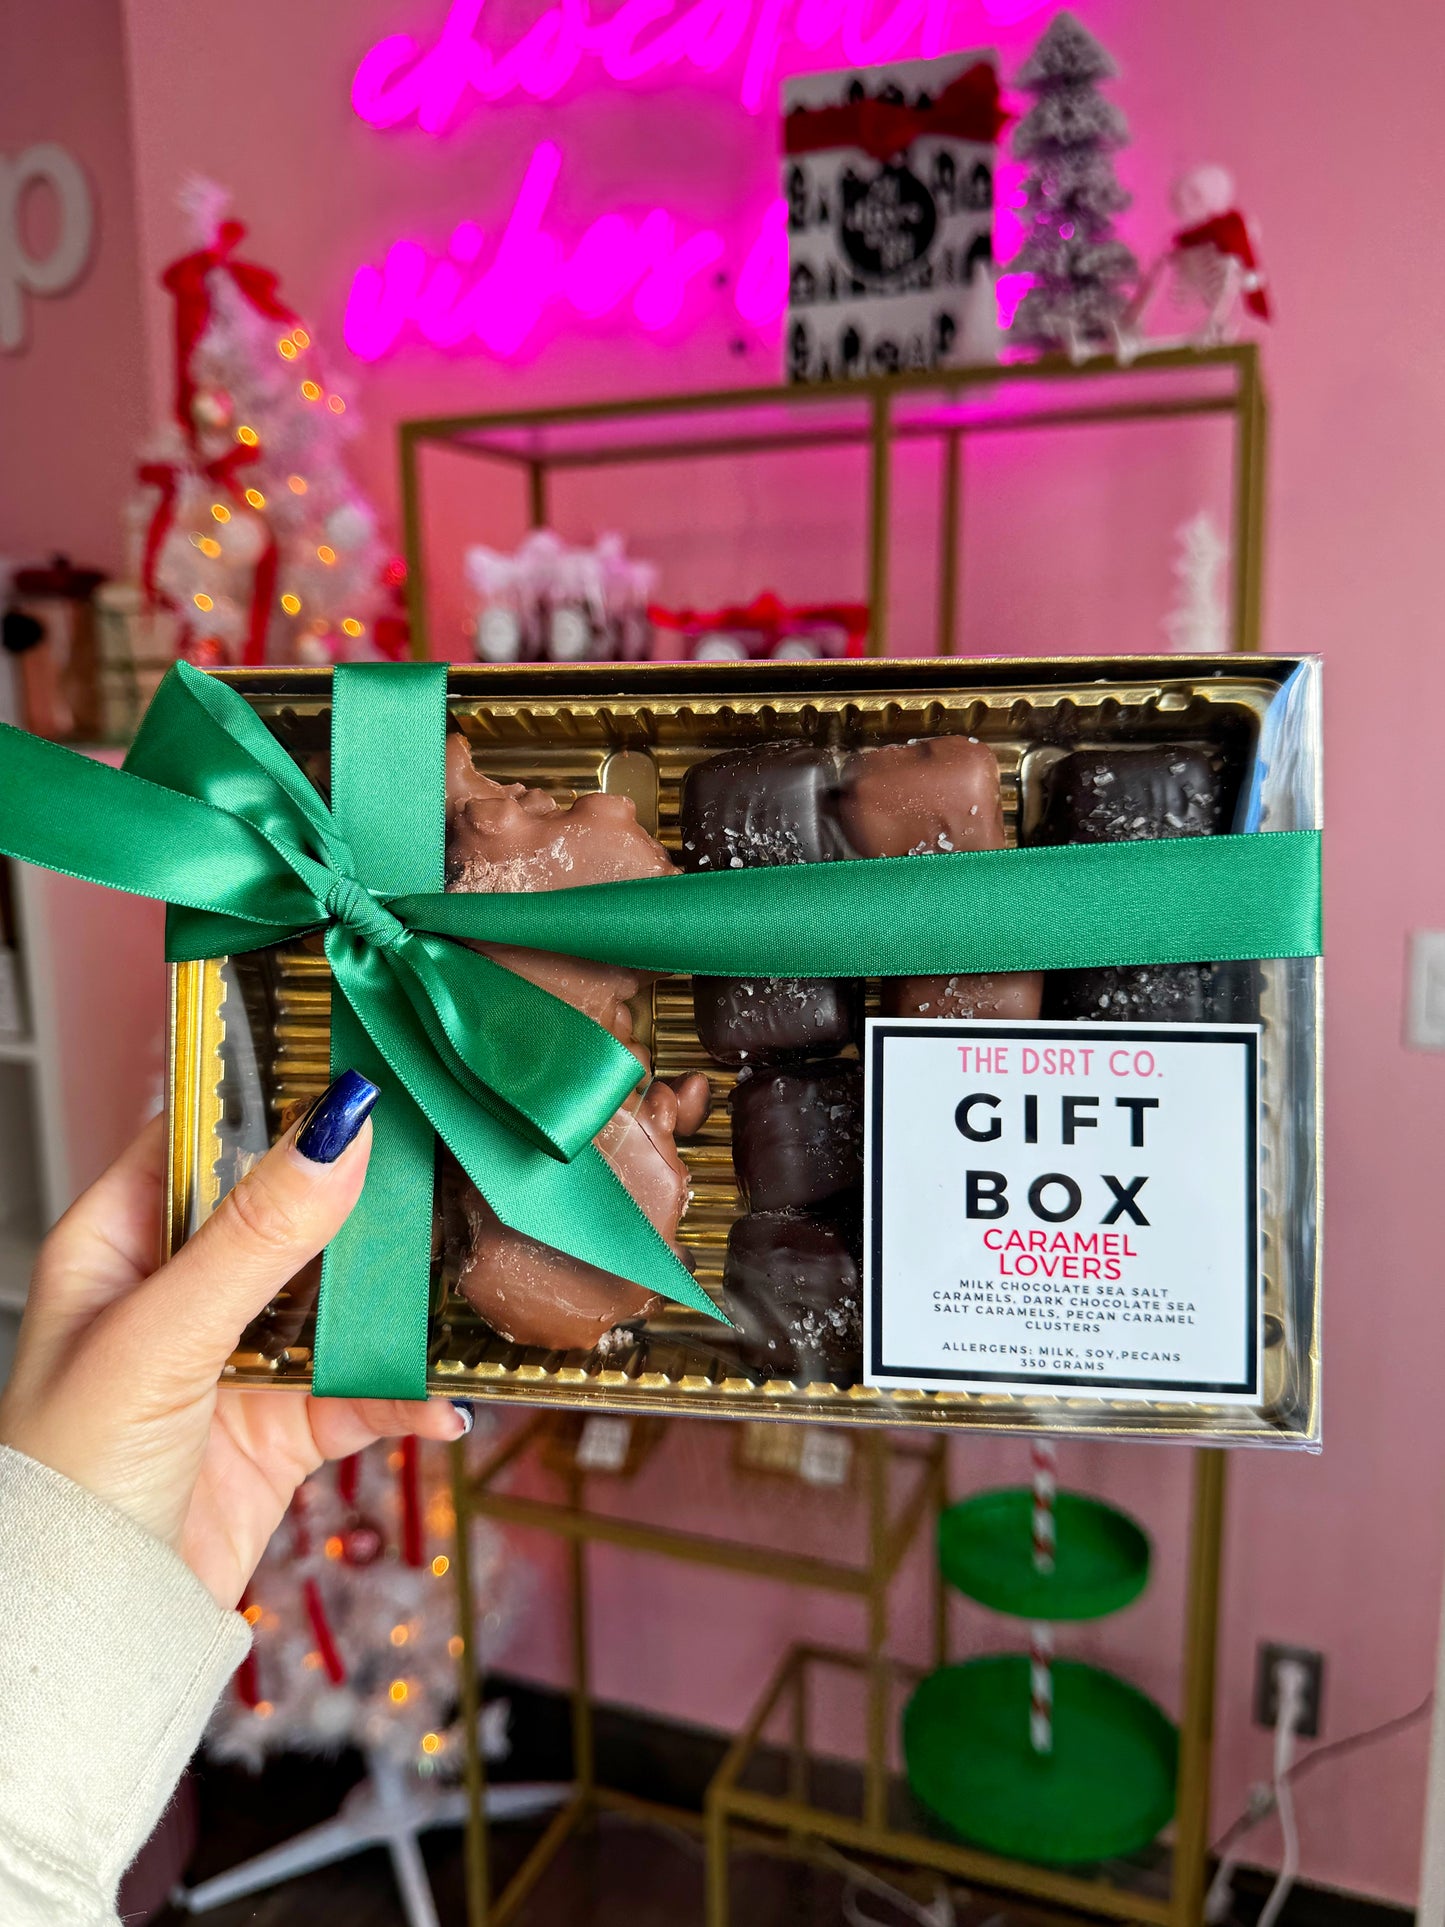 Caramel Lover's Gift Box